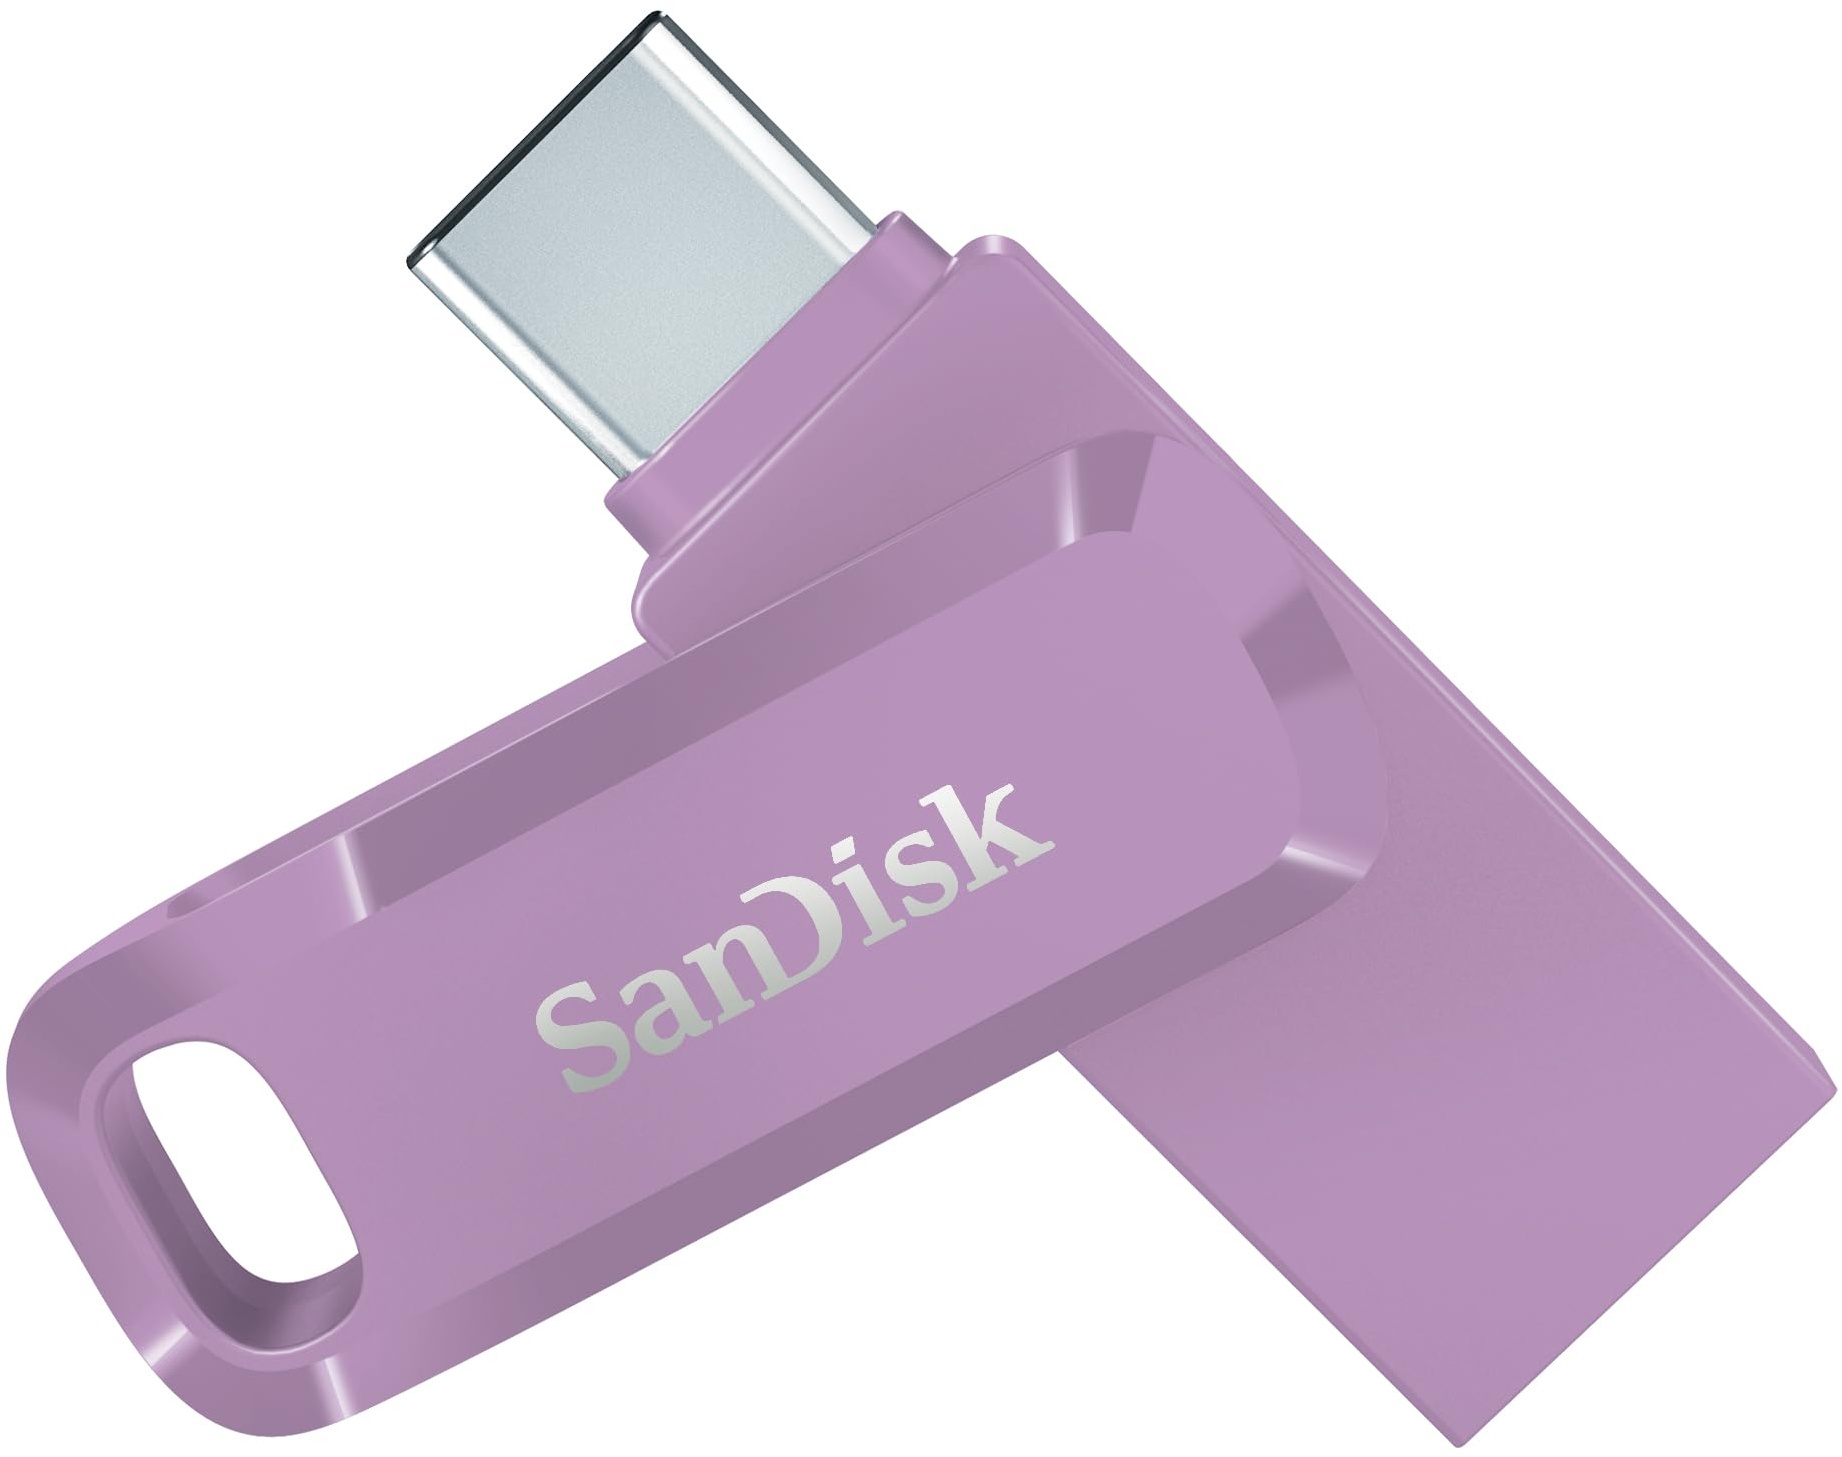 SanDisk Ultra Dual Drive Go USB Type-C 64 GB (Android Smartphone Speicher, USB Type-C-Anschluss, 150 MB/s Lesegeschwindigkeit, Nutzung als Schlüsselanhänger möglich) Lavendel